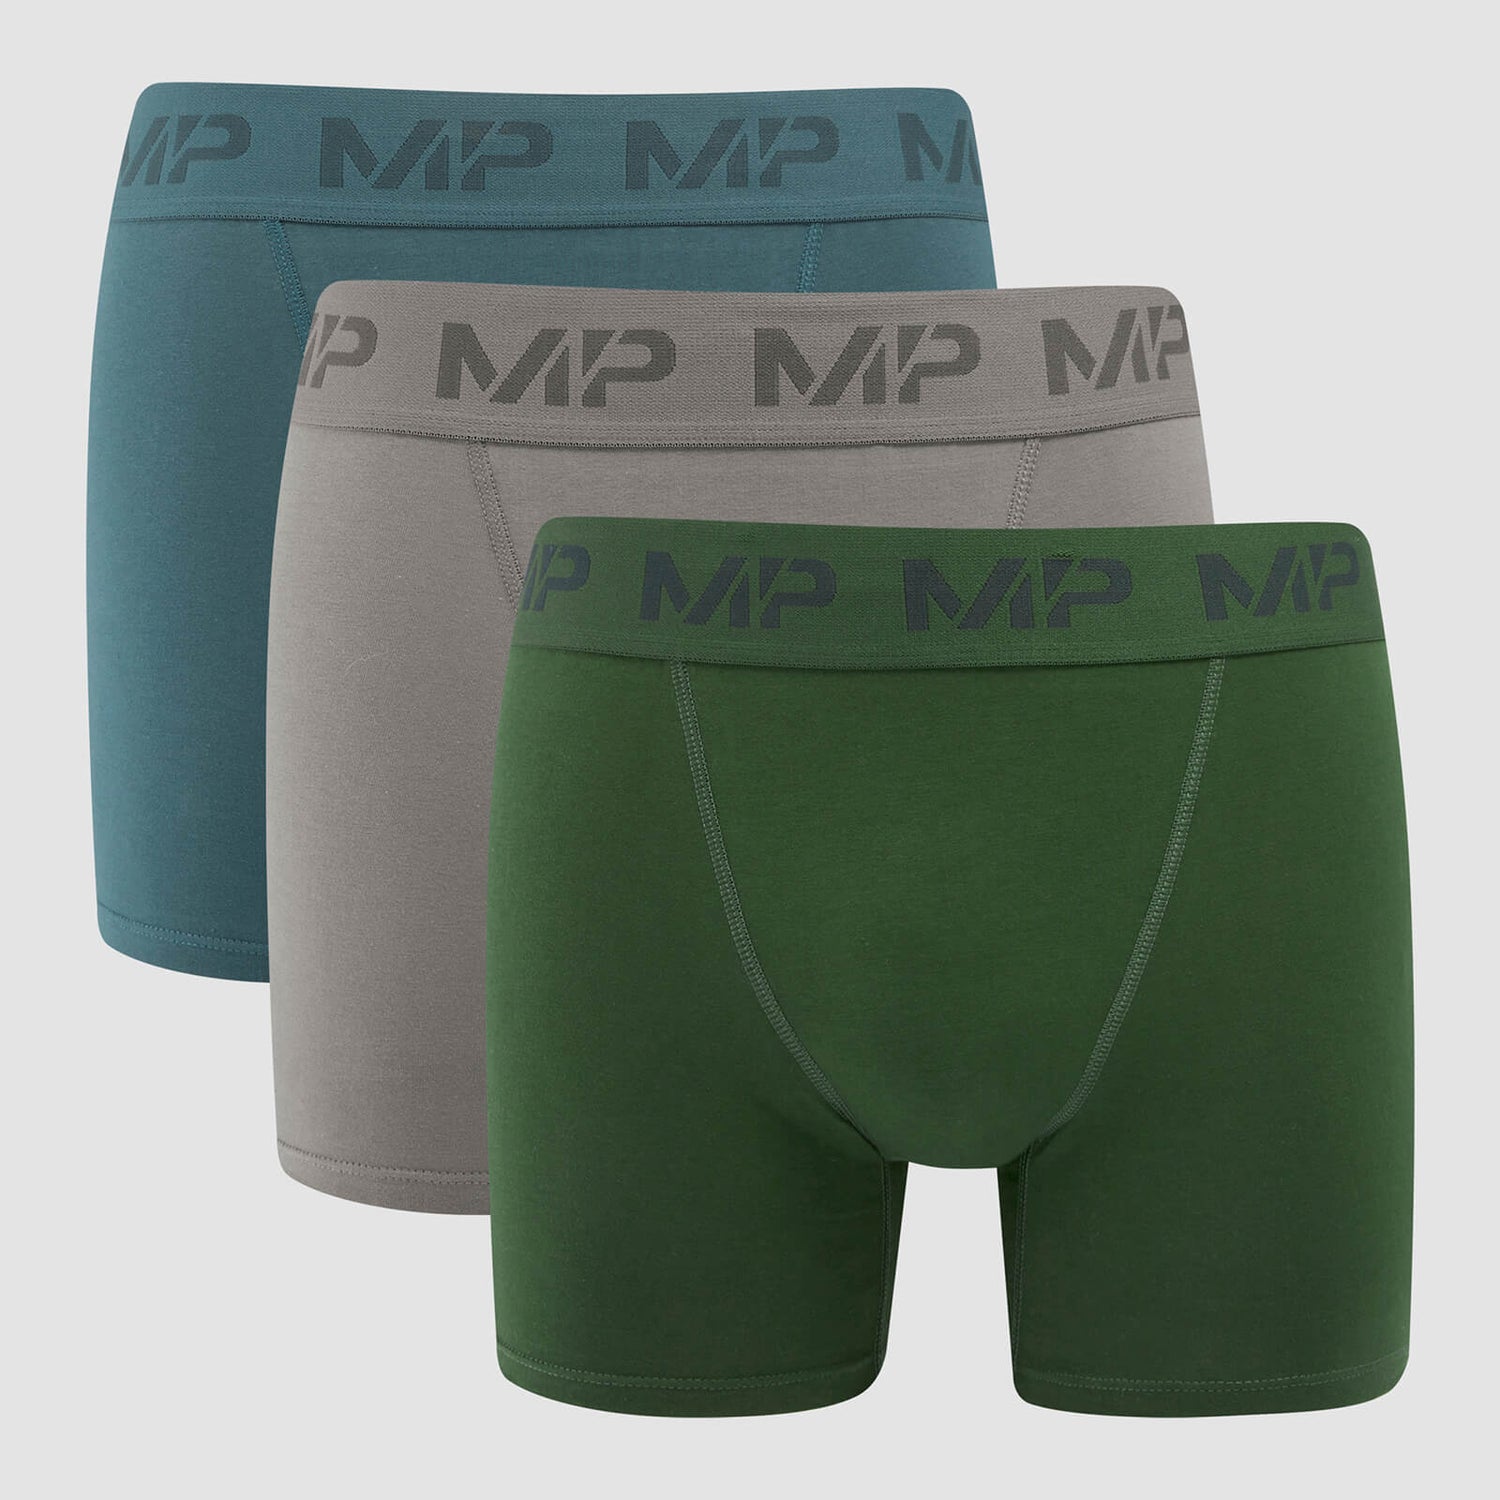 Bóxers para hombre de MP (paquete de 3) - Gris carbón/azul ahumado/verde oscuro - XS